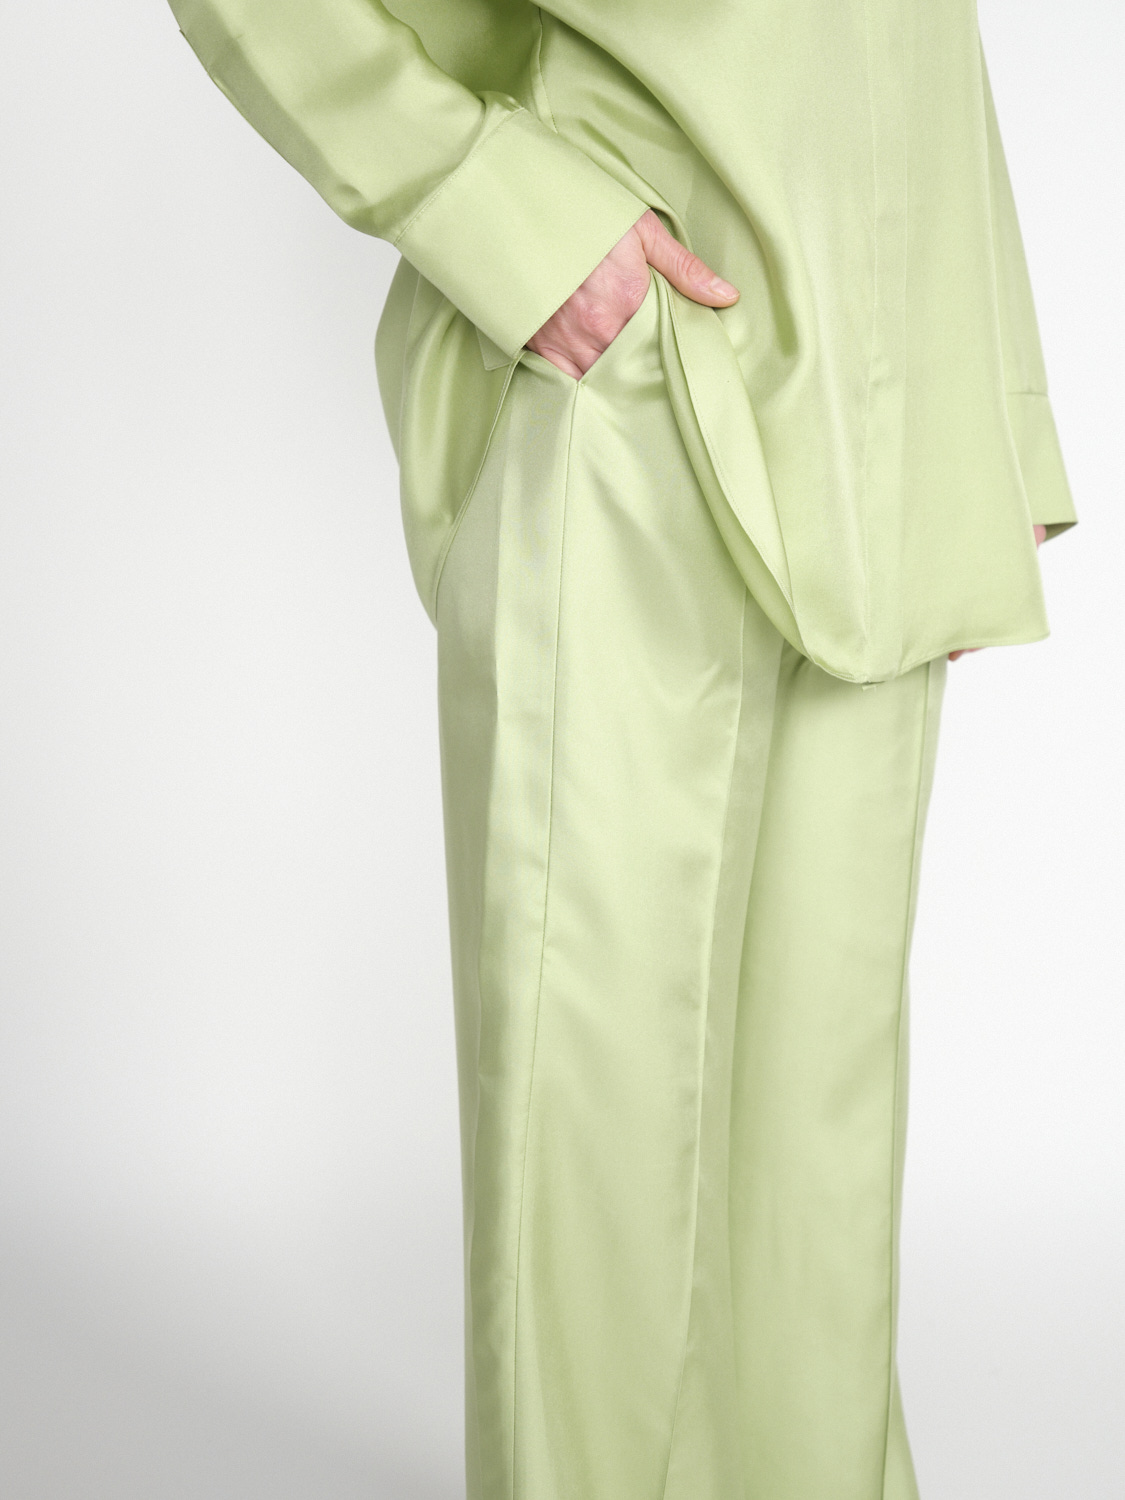 Dorothee Schumacher Sensual Coolness - Lightweight trousers made of silk twill  hellgrün M